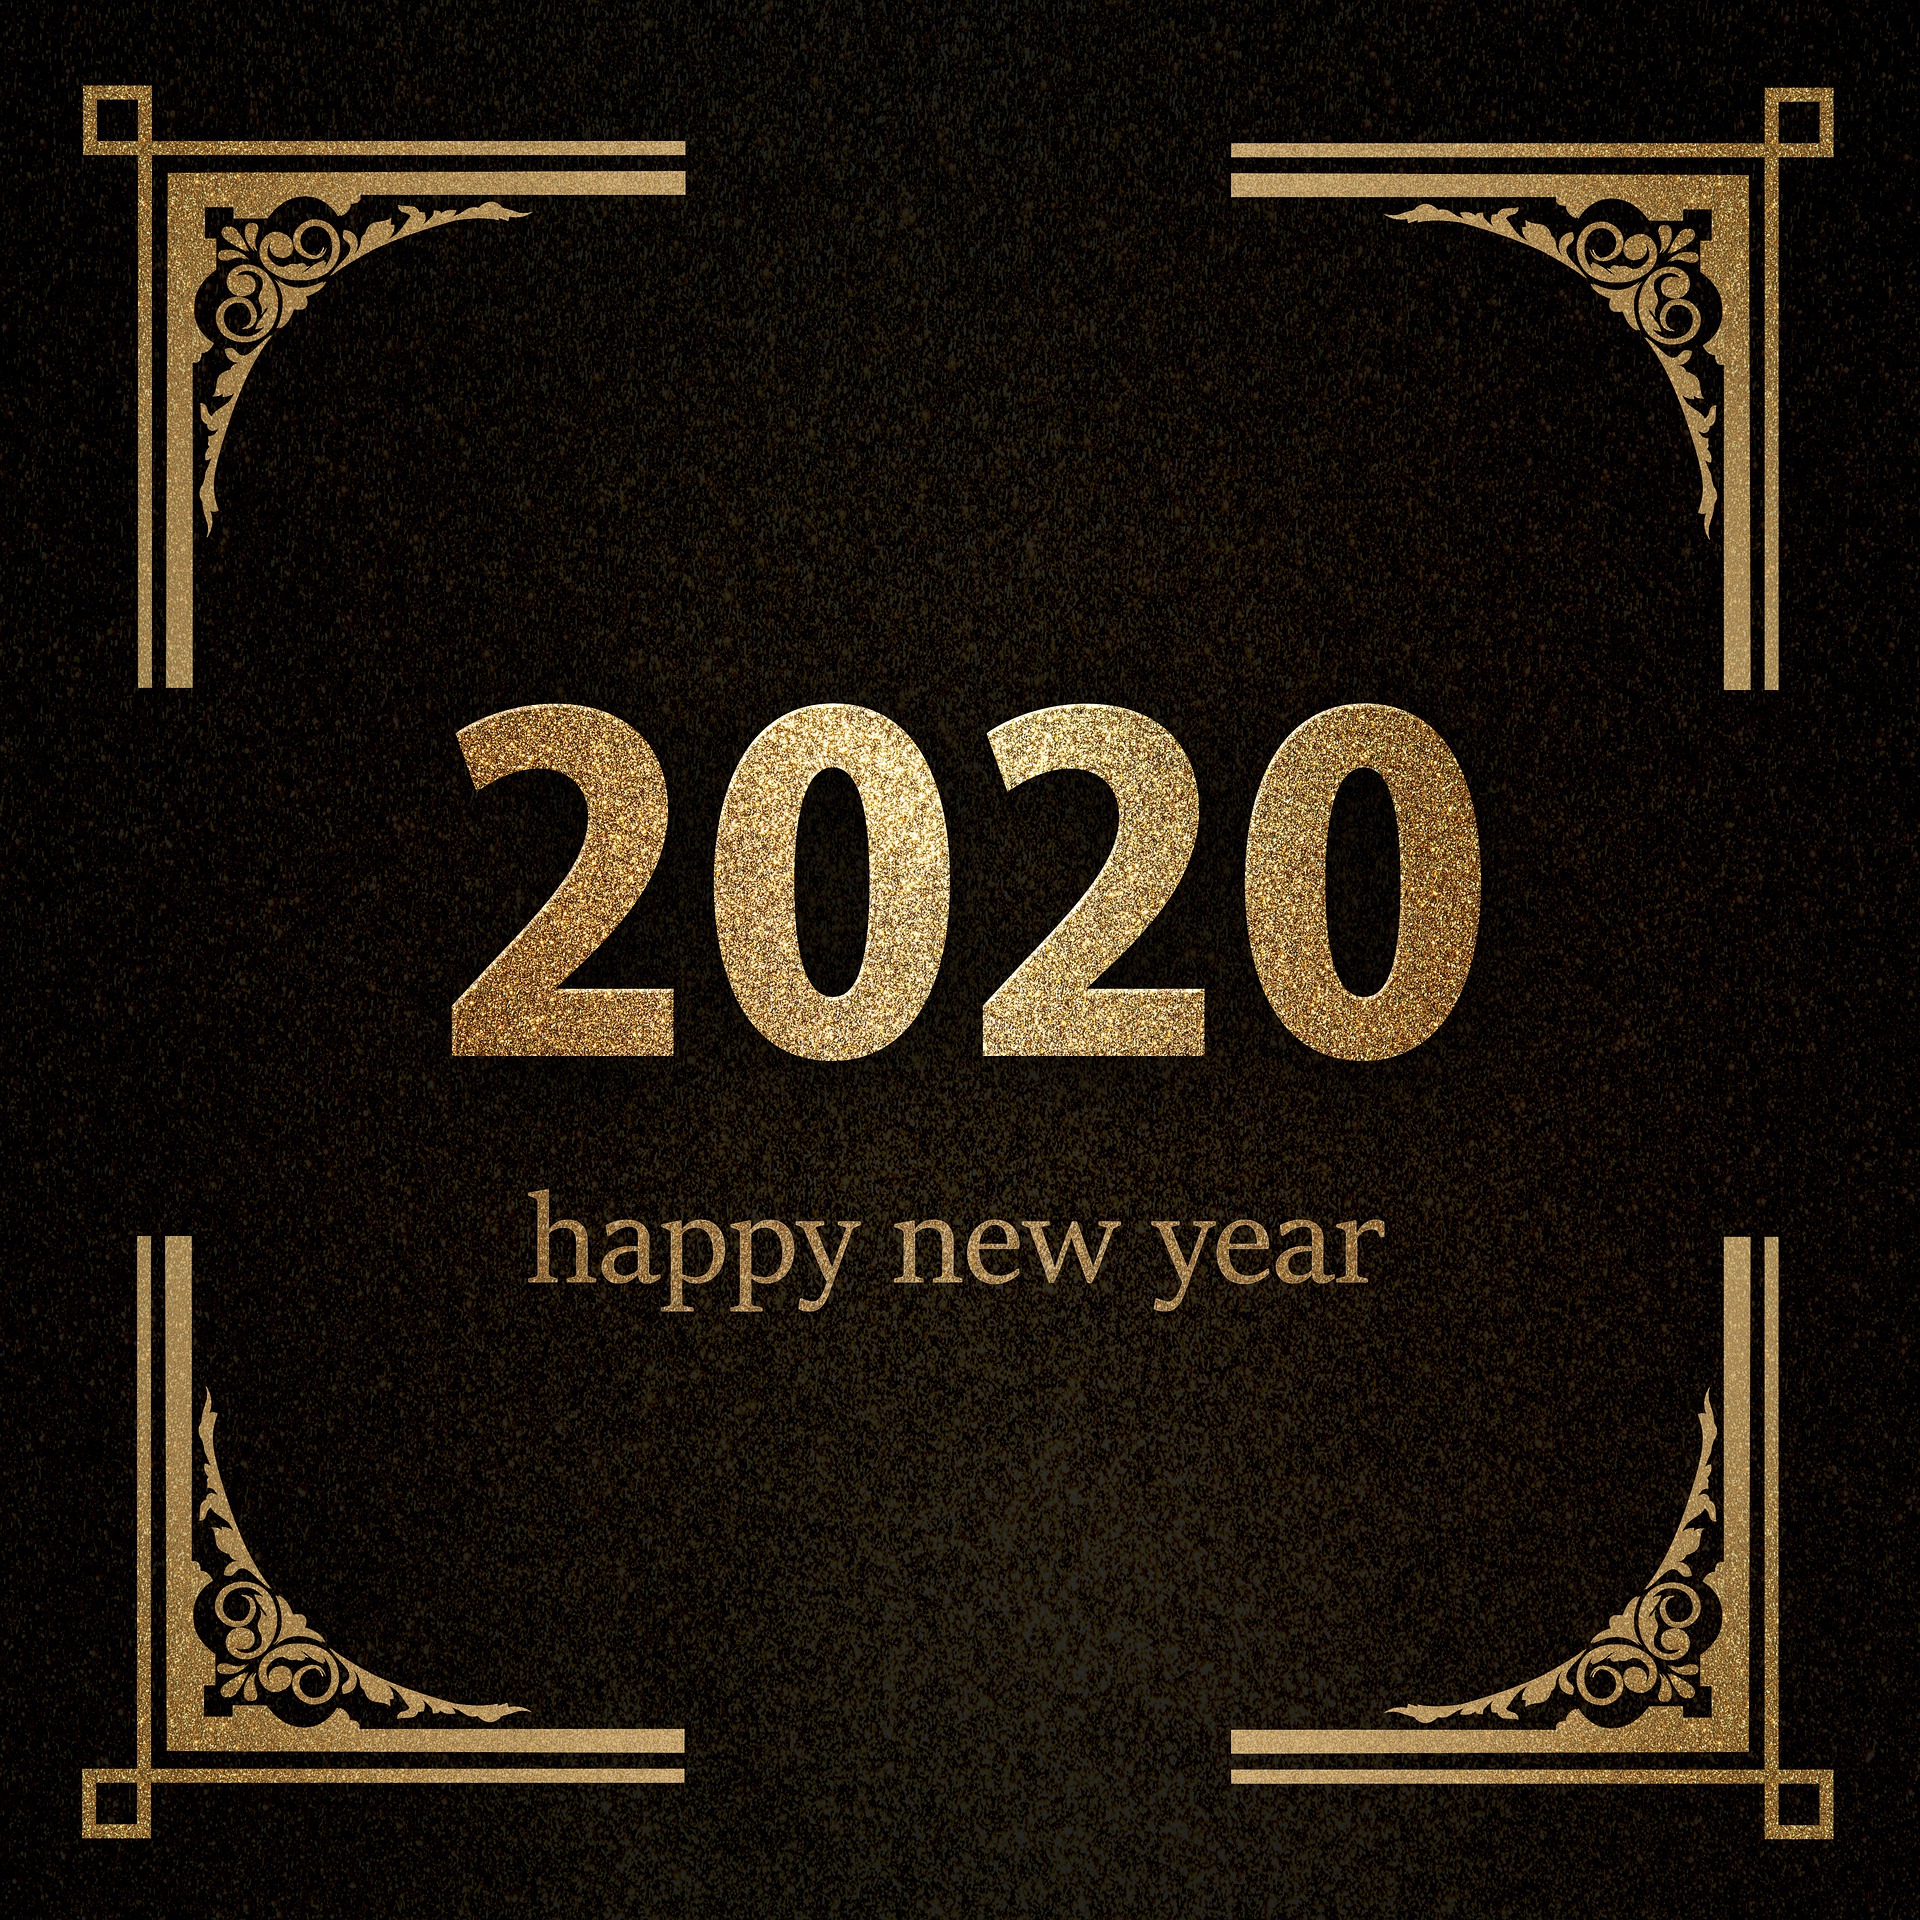 英語で新年のメッセージを送ろう新年の挨拶フレーズ集 ニュージーランド留学エージェントgostudy